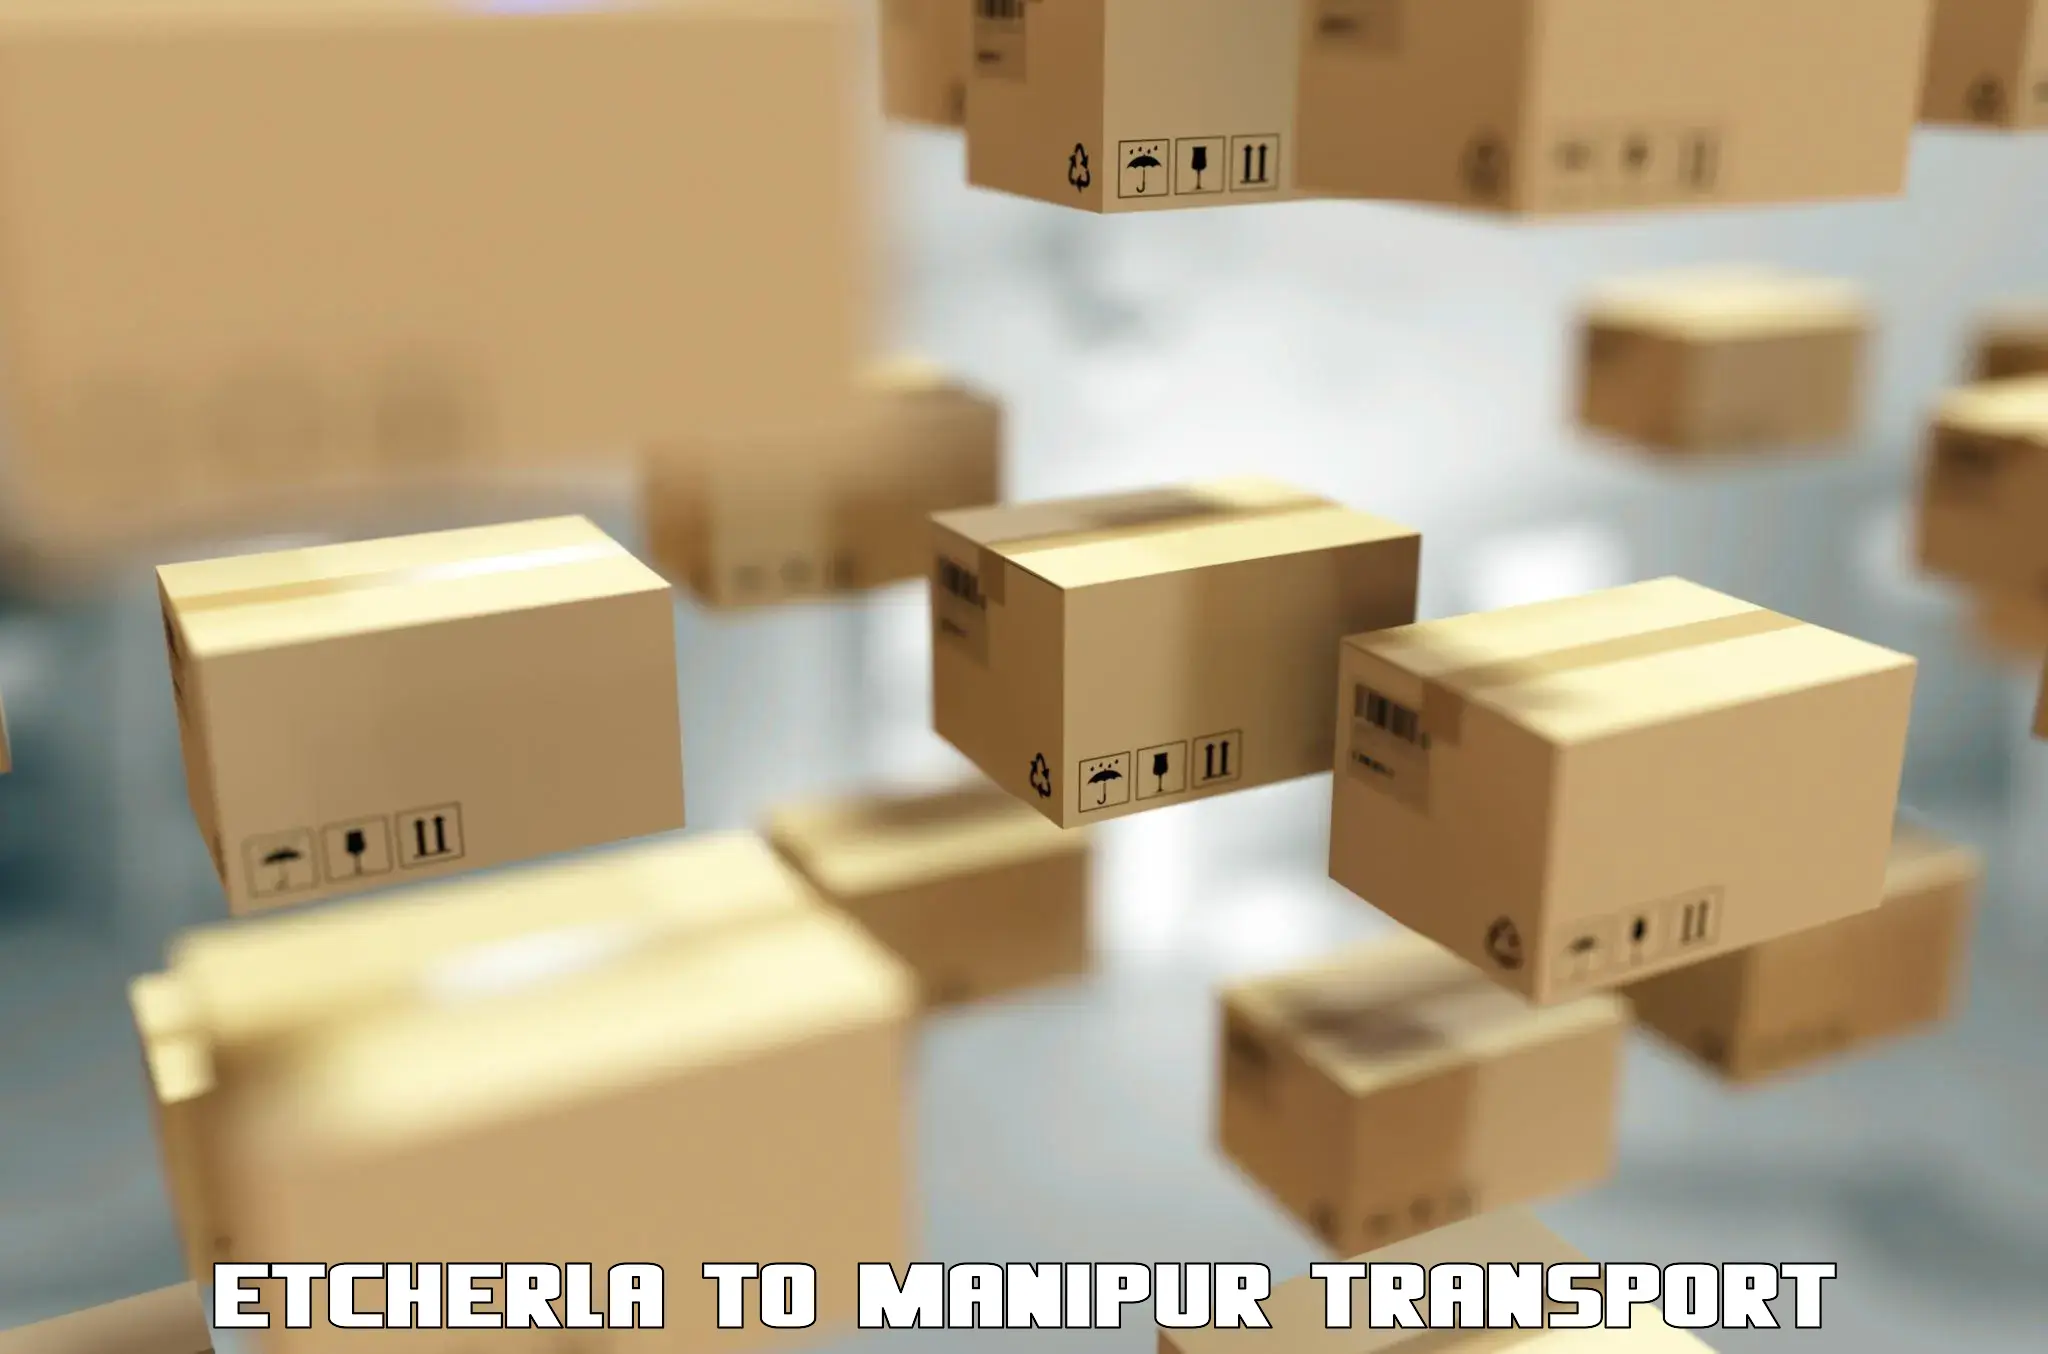 Cargo train transport services in Etcherla to Manipur